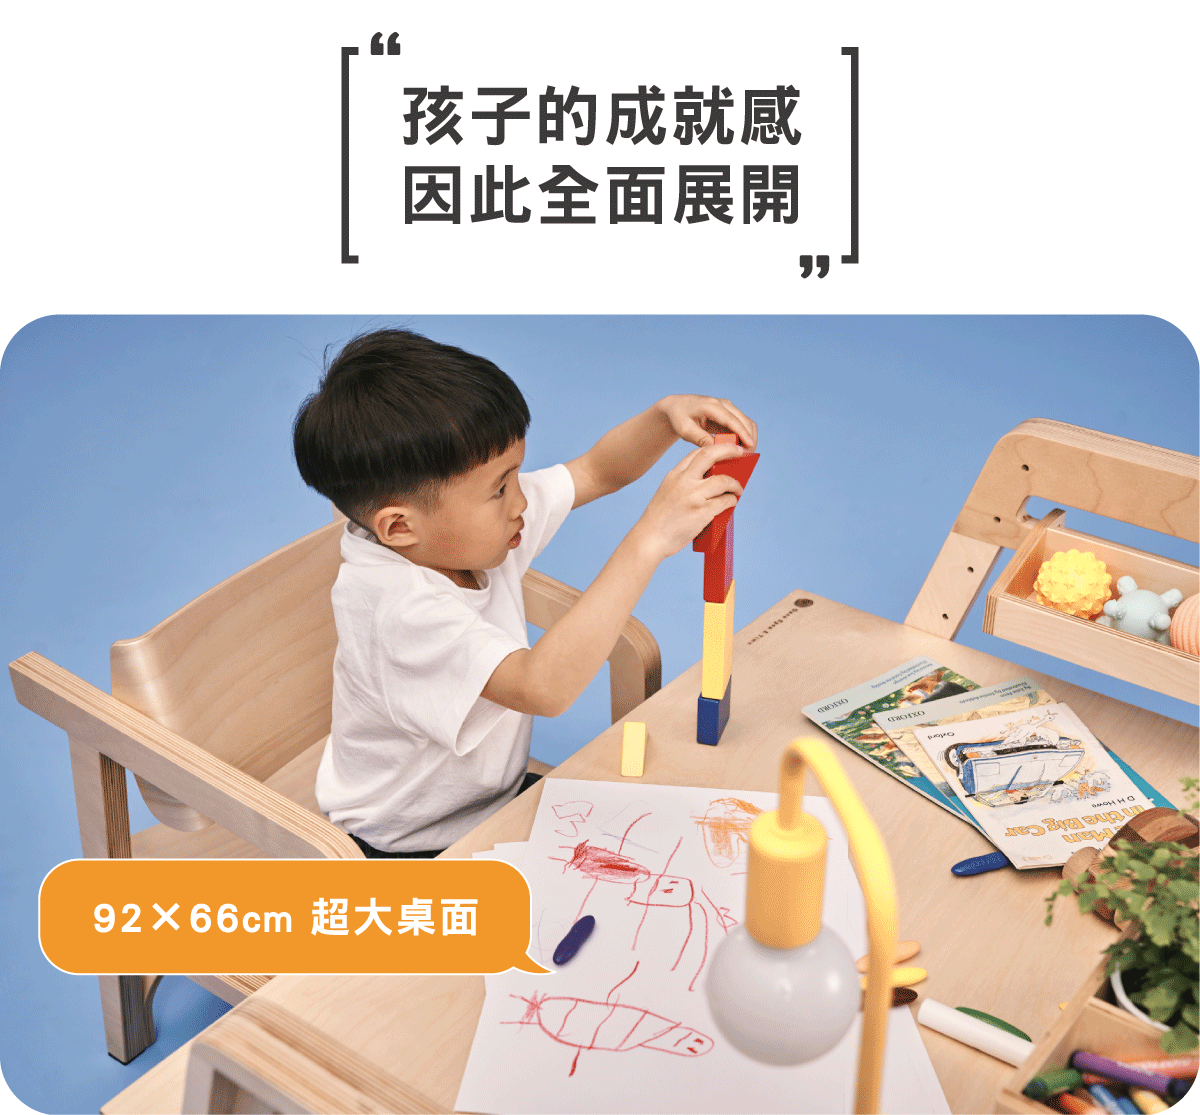 柯比桌 - 專為學齡前兒童設計的成長型書桌04